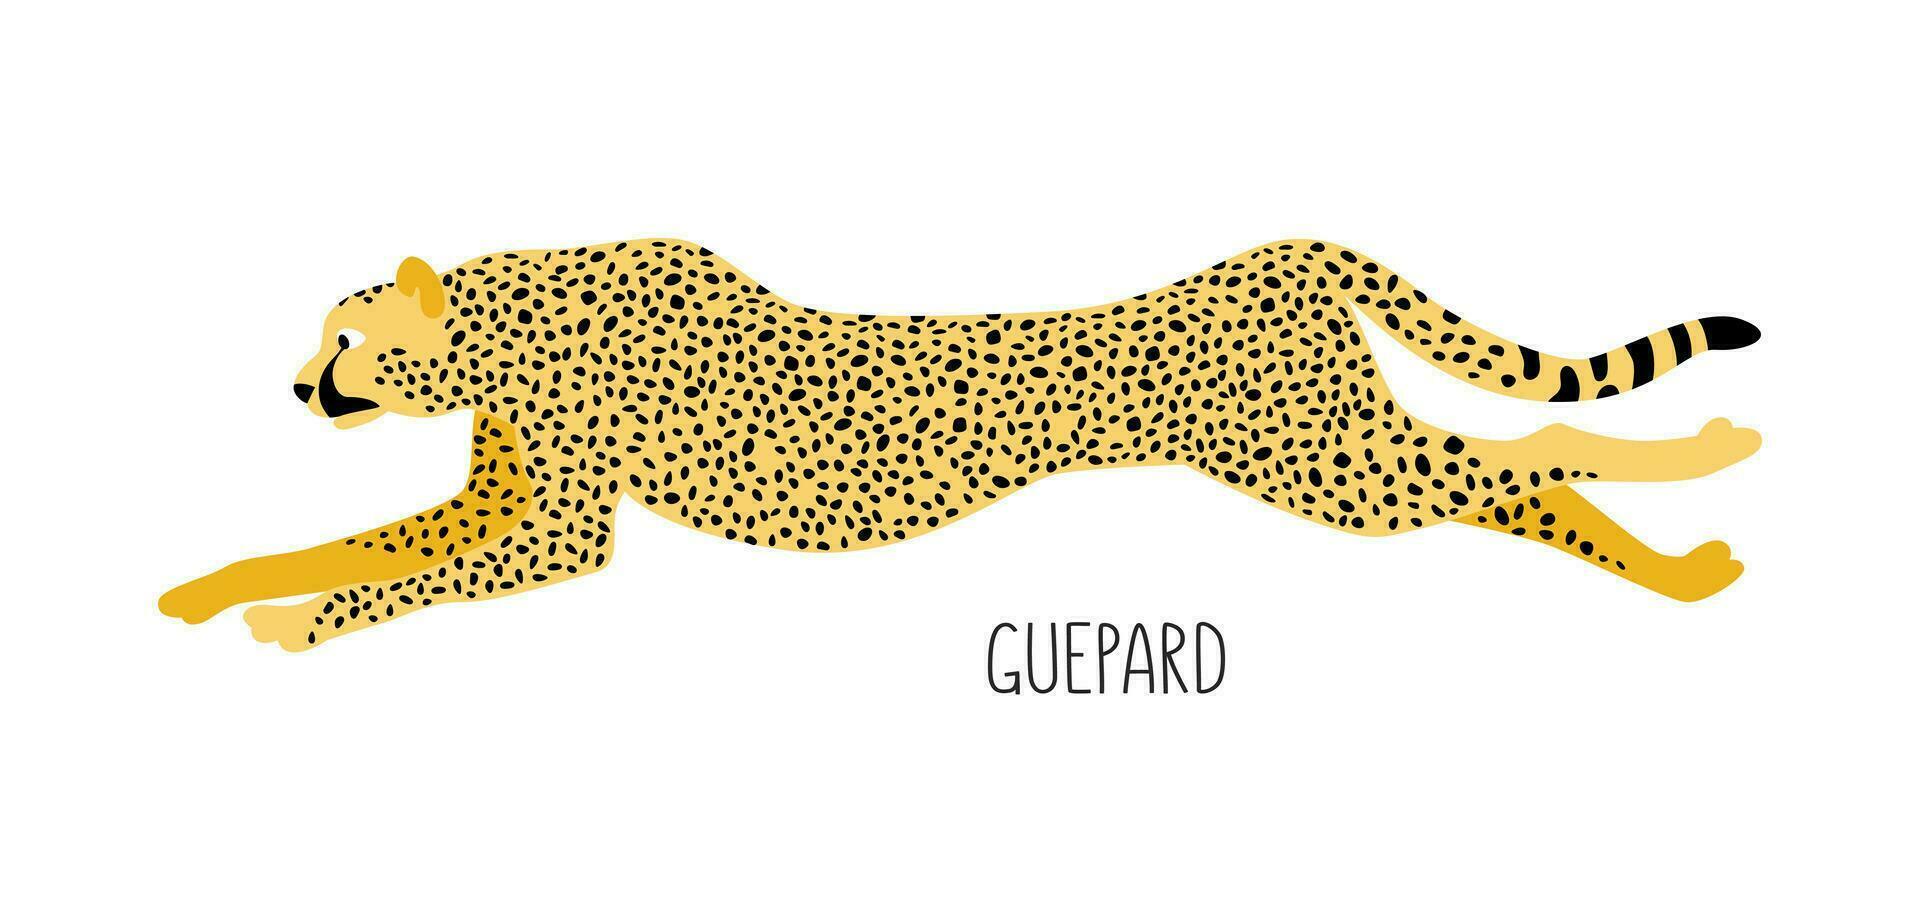 gepard är en vild katt. titel. vektor platt illustration av djur- isolerat på vit bakgrund.